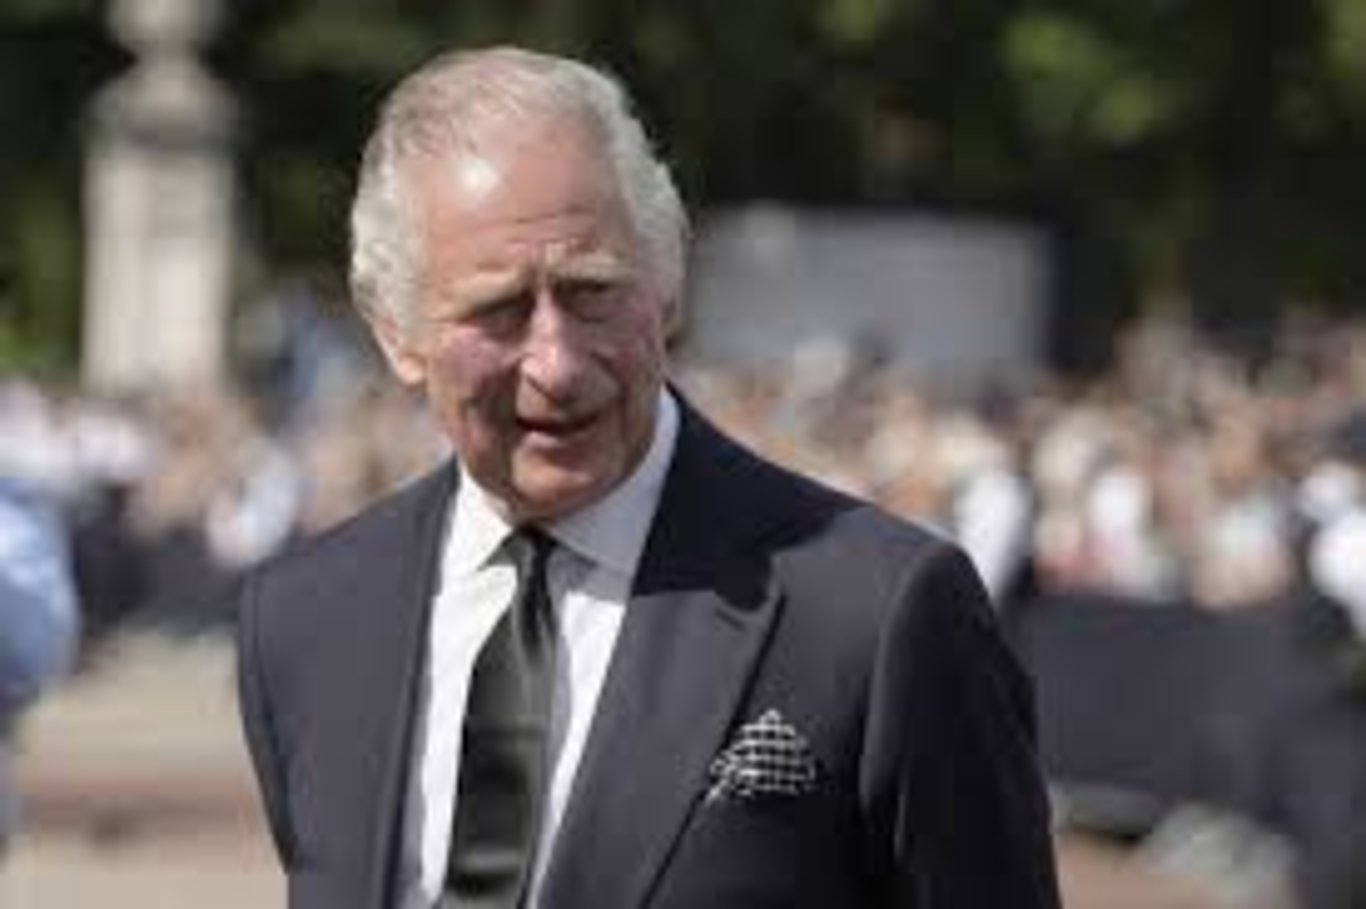 Kral Charles taç giyme töreni ne zaman, saat kaçta? Kral 3. Charles taç giyme töreni canlı yayınlanacak mı?